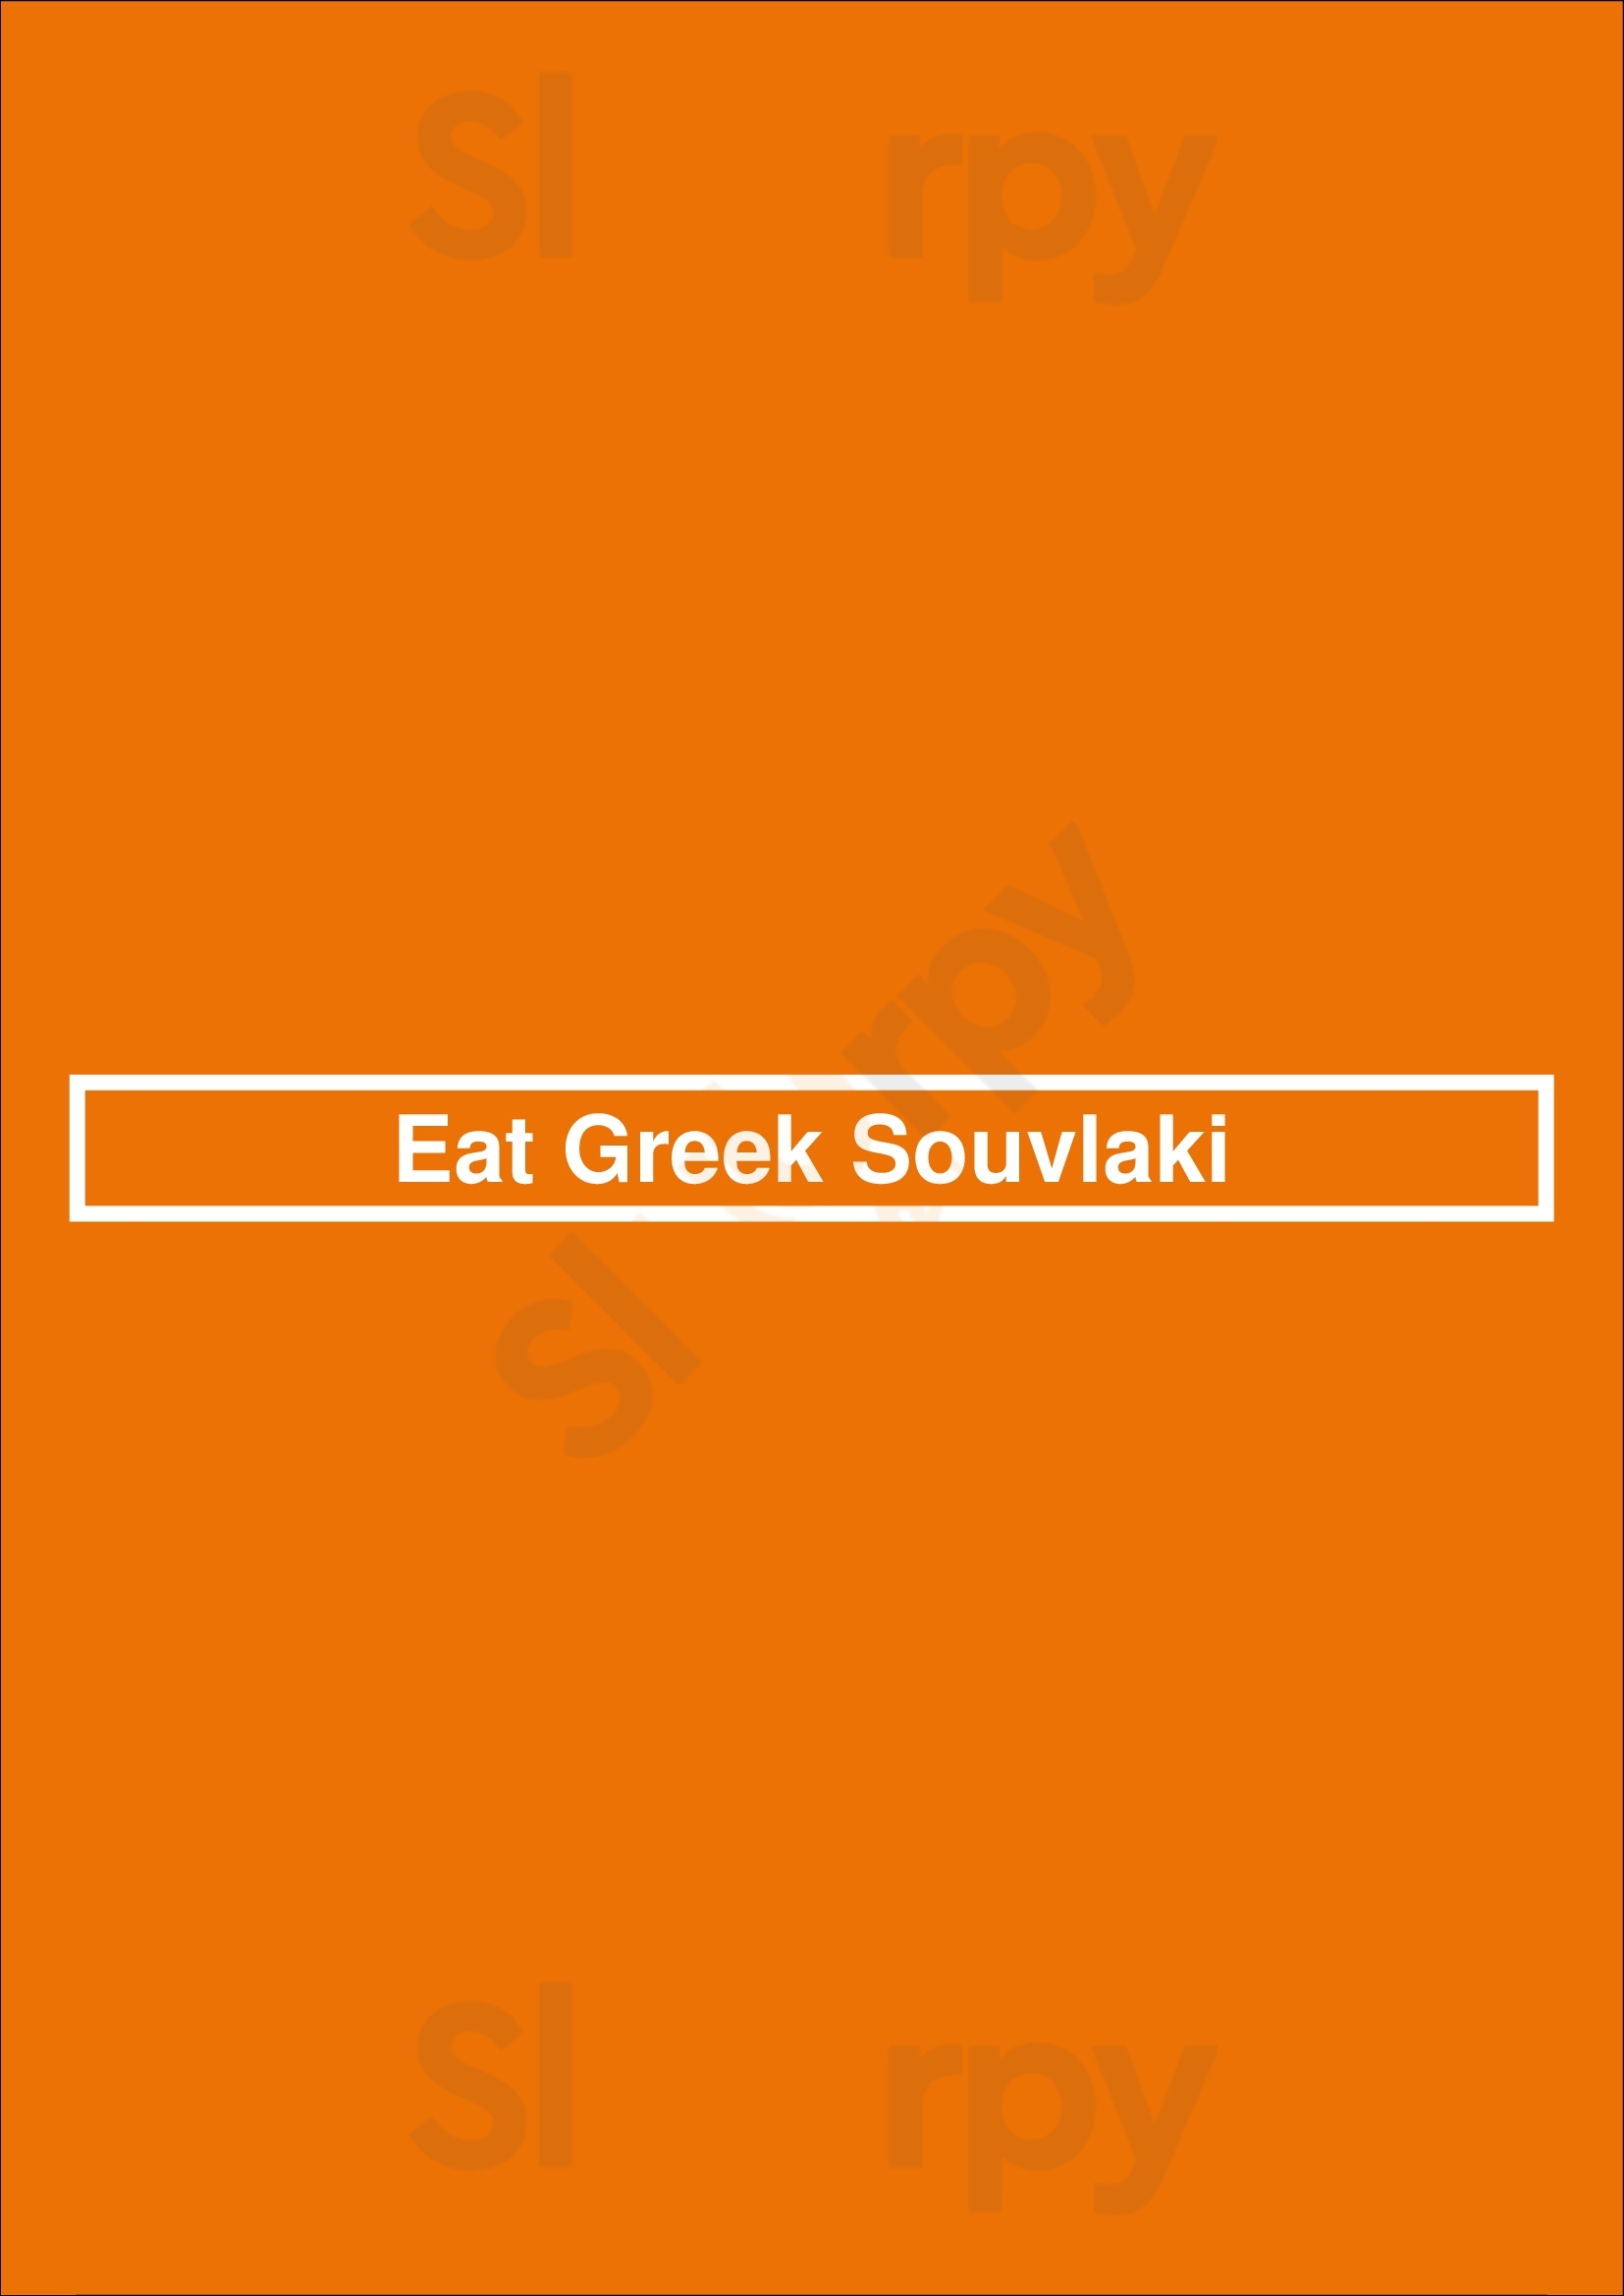 Eat Greek Souvlaki Miami Menu - 1